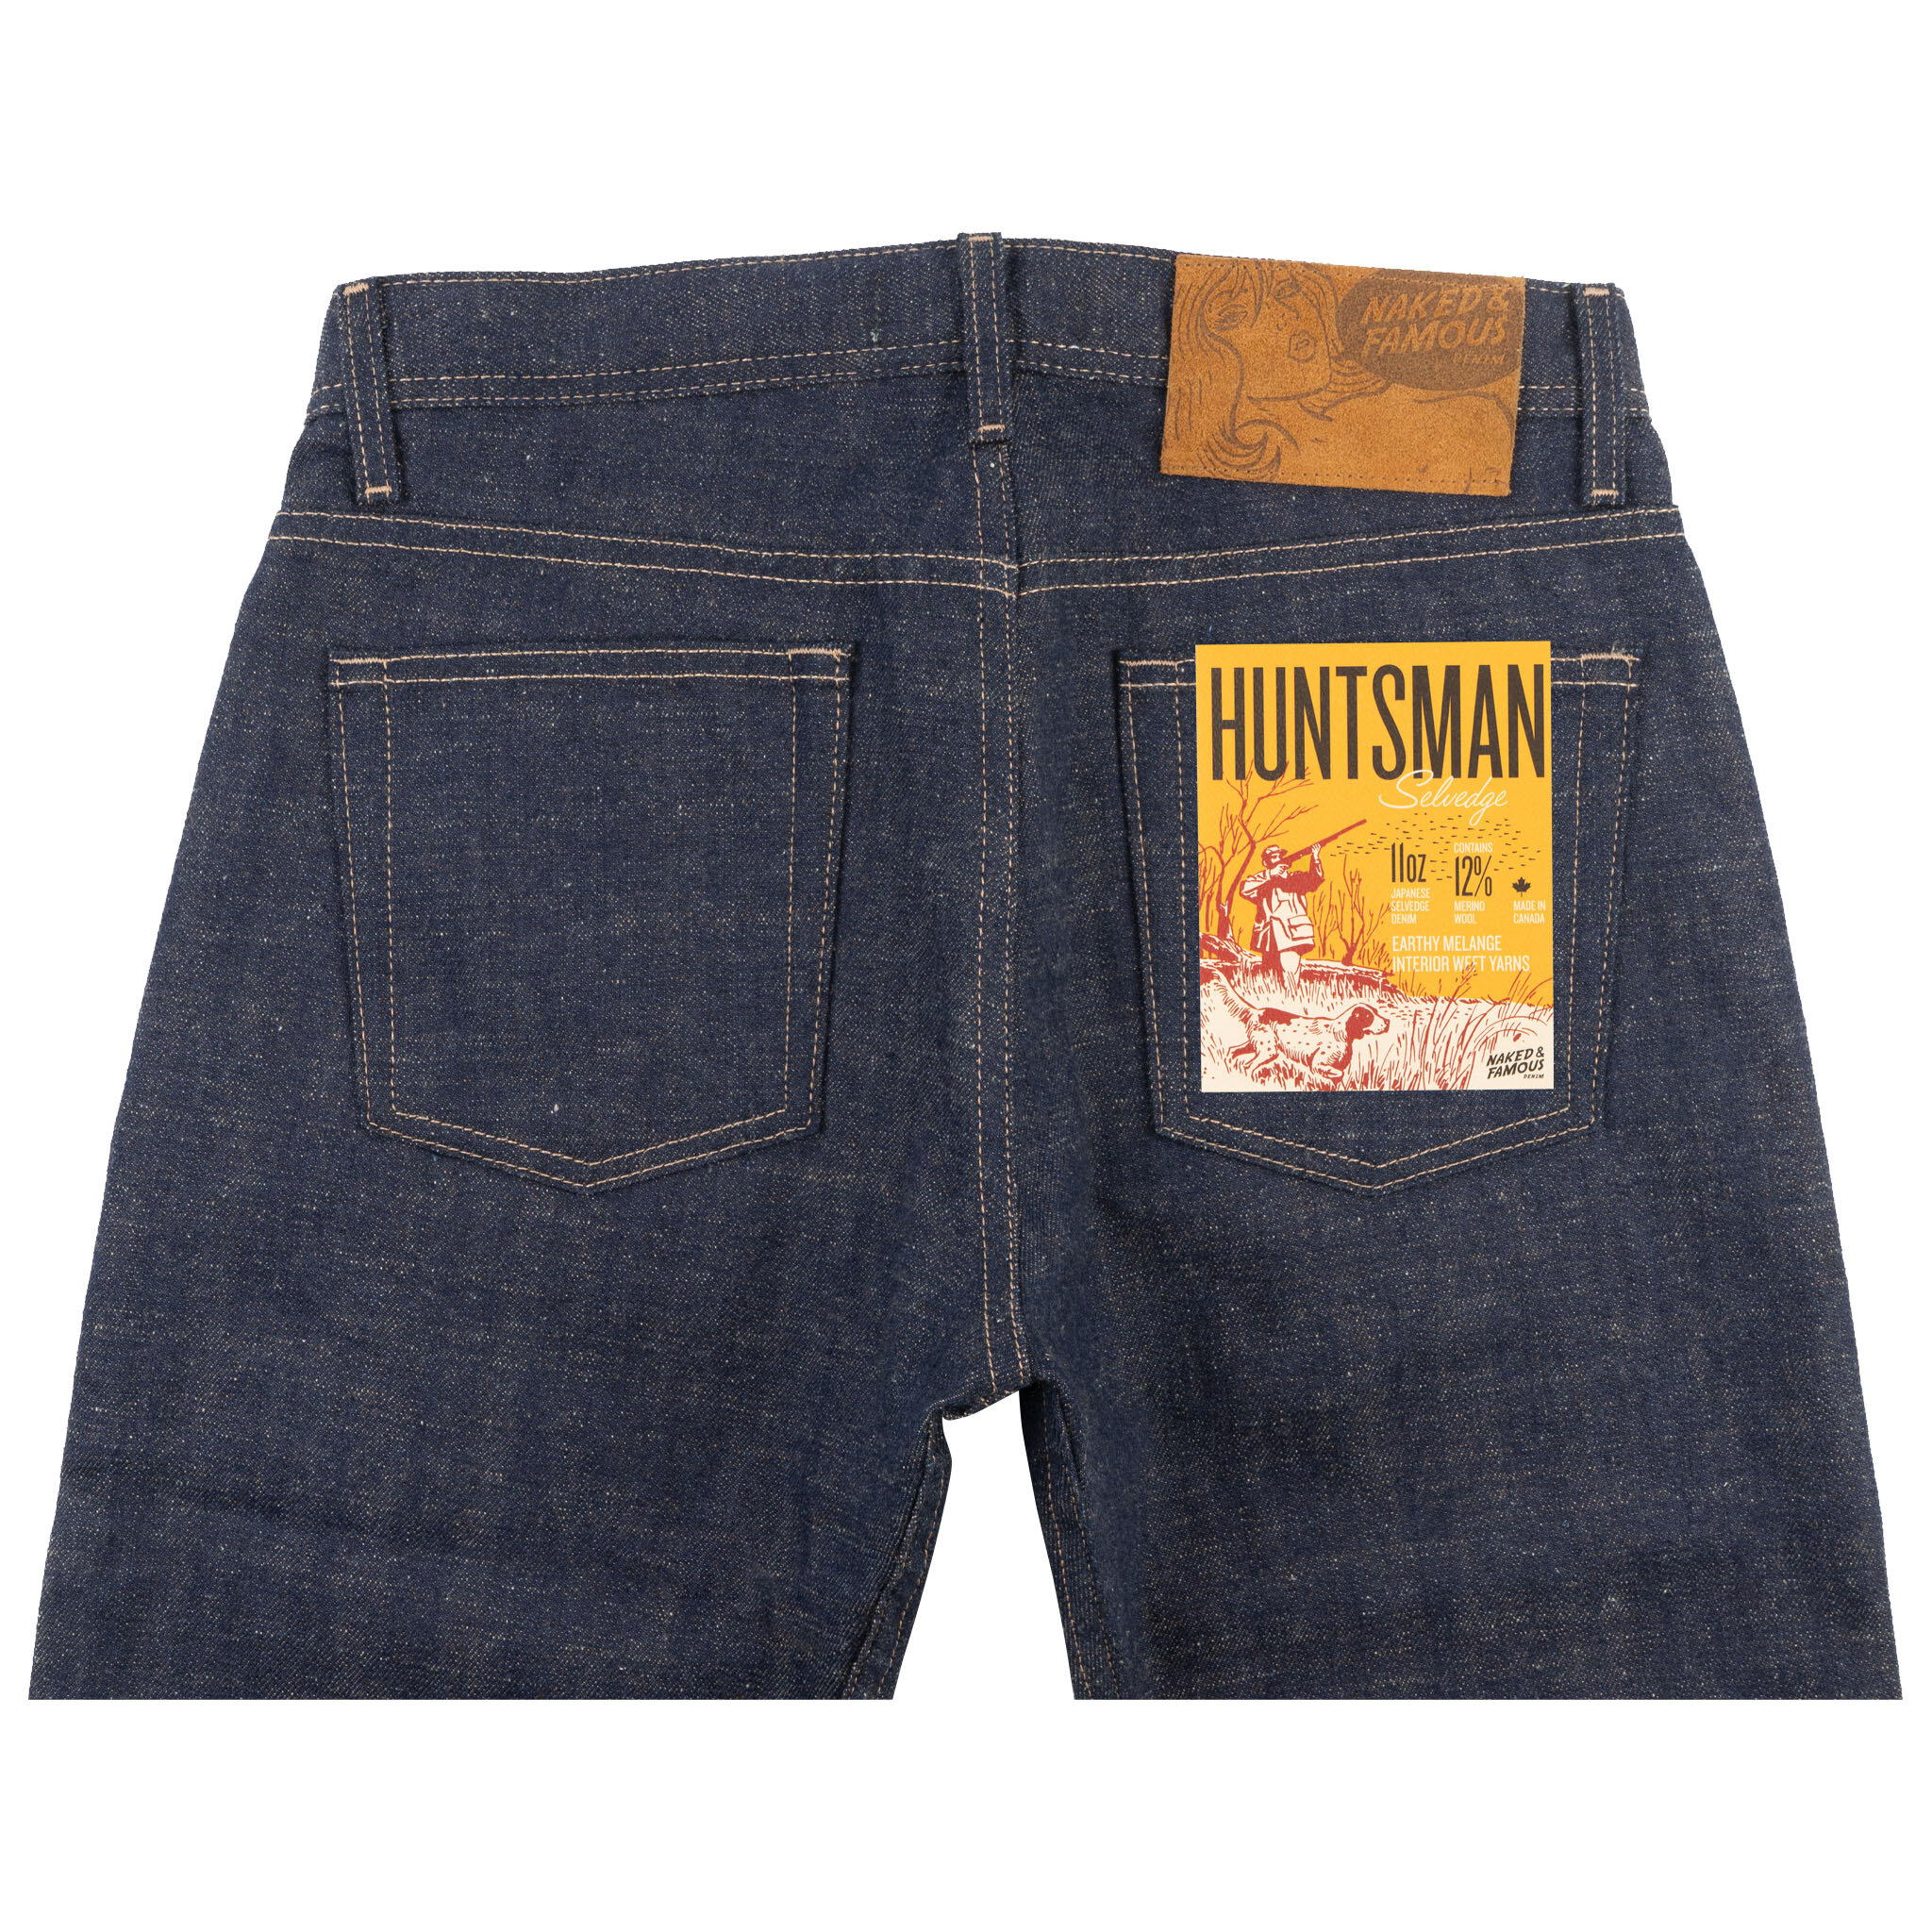  Huntsman Selvedge jeans - back 